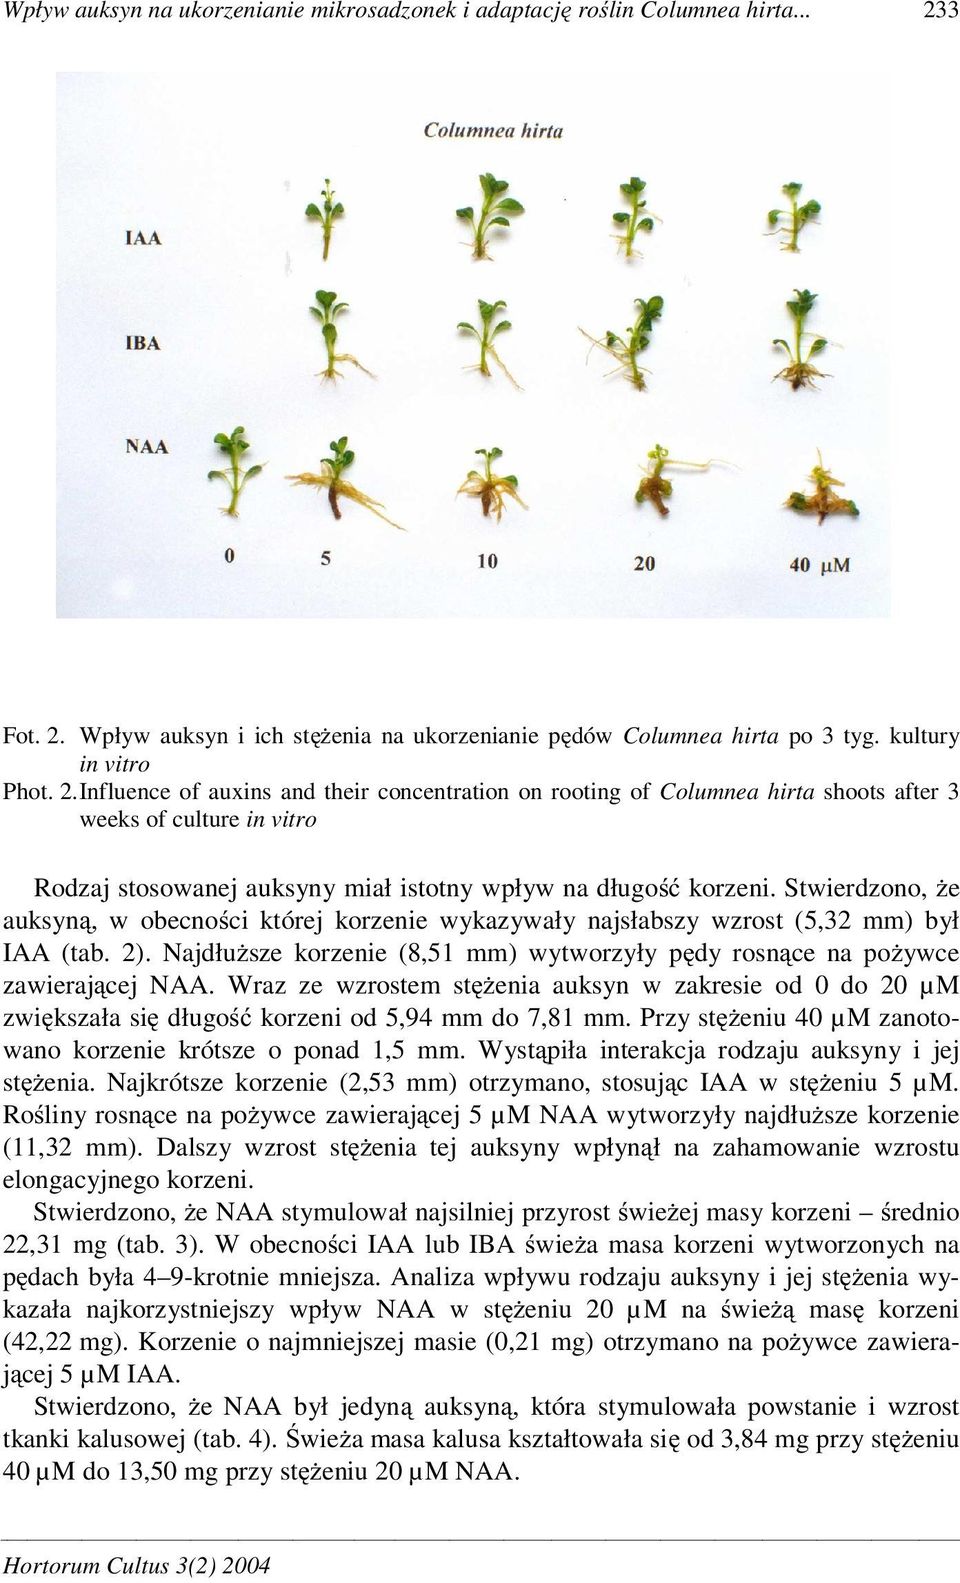 Stwierdzono, e auksyn, w obecno ci której korzenie wykazywały najsłabszy wzrost (5,32 mm) był IAA (tab. 2). Najdłu sze korzenie (8,51 mm) wytworzyły p dy rosn ce na po ywce zawieraj cej NAA.